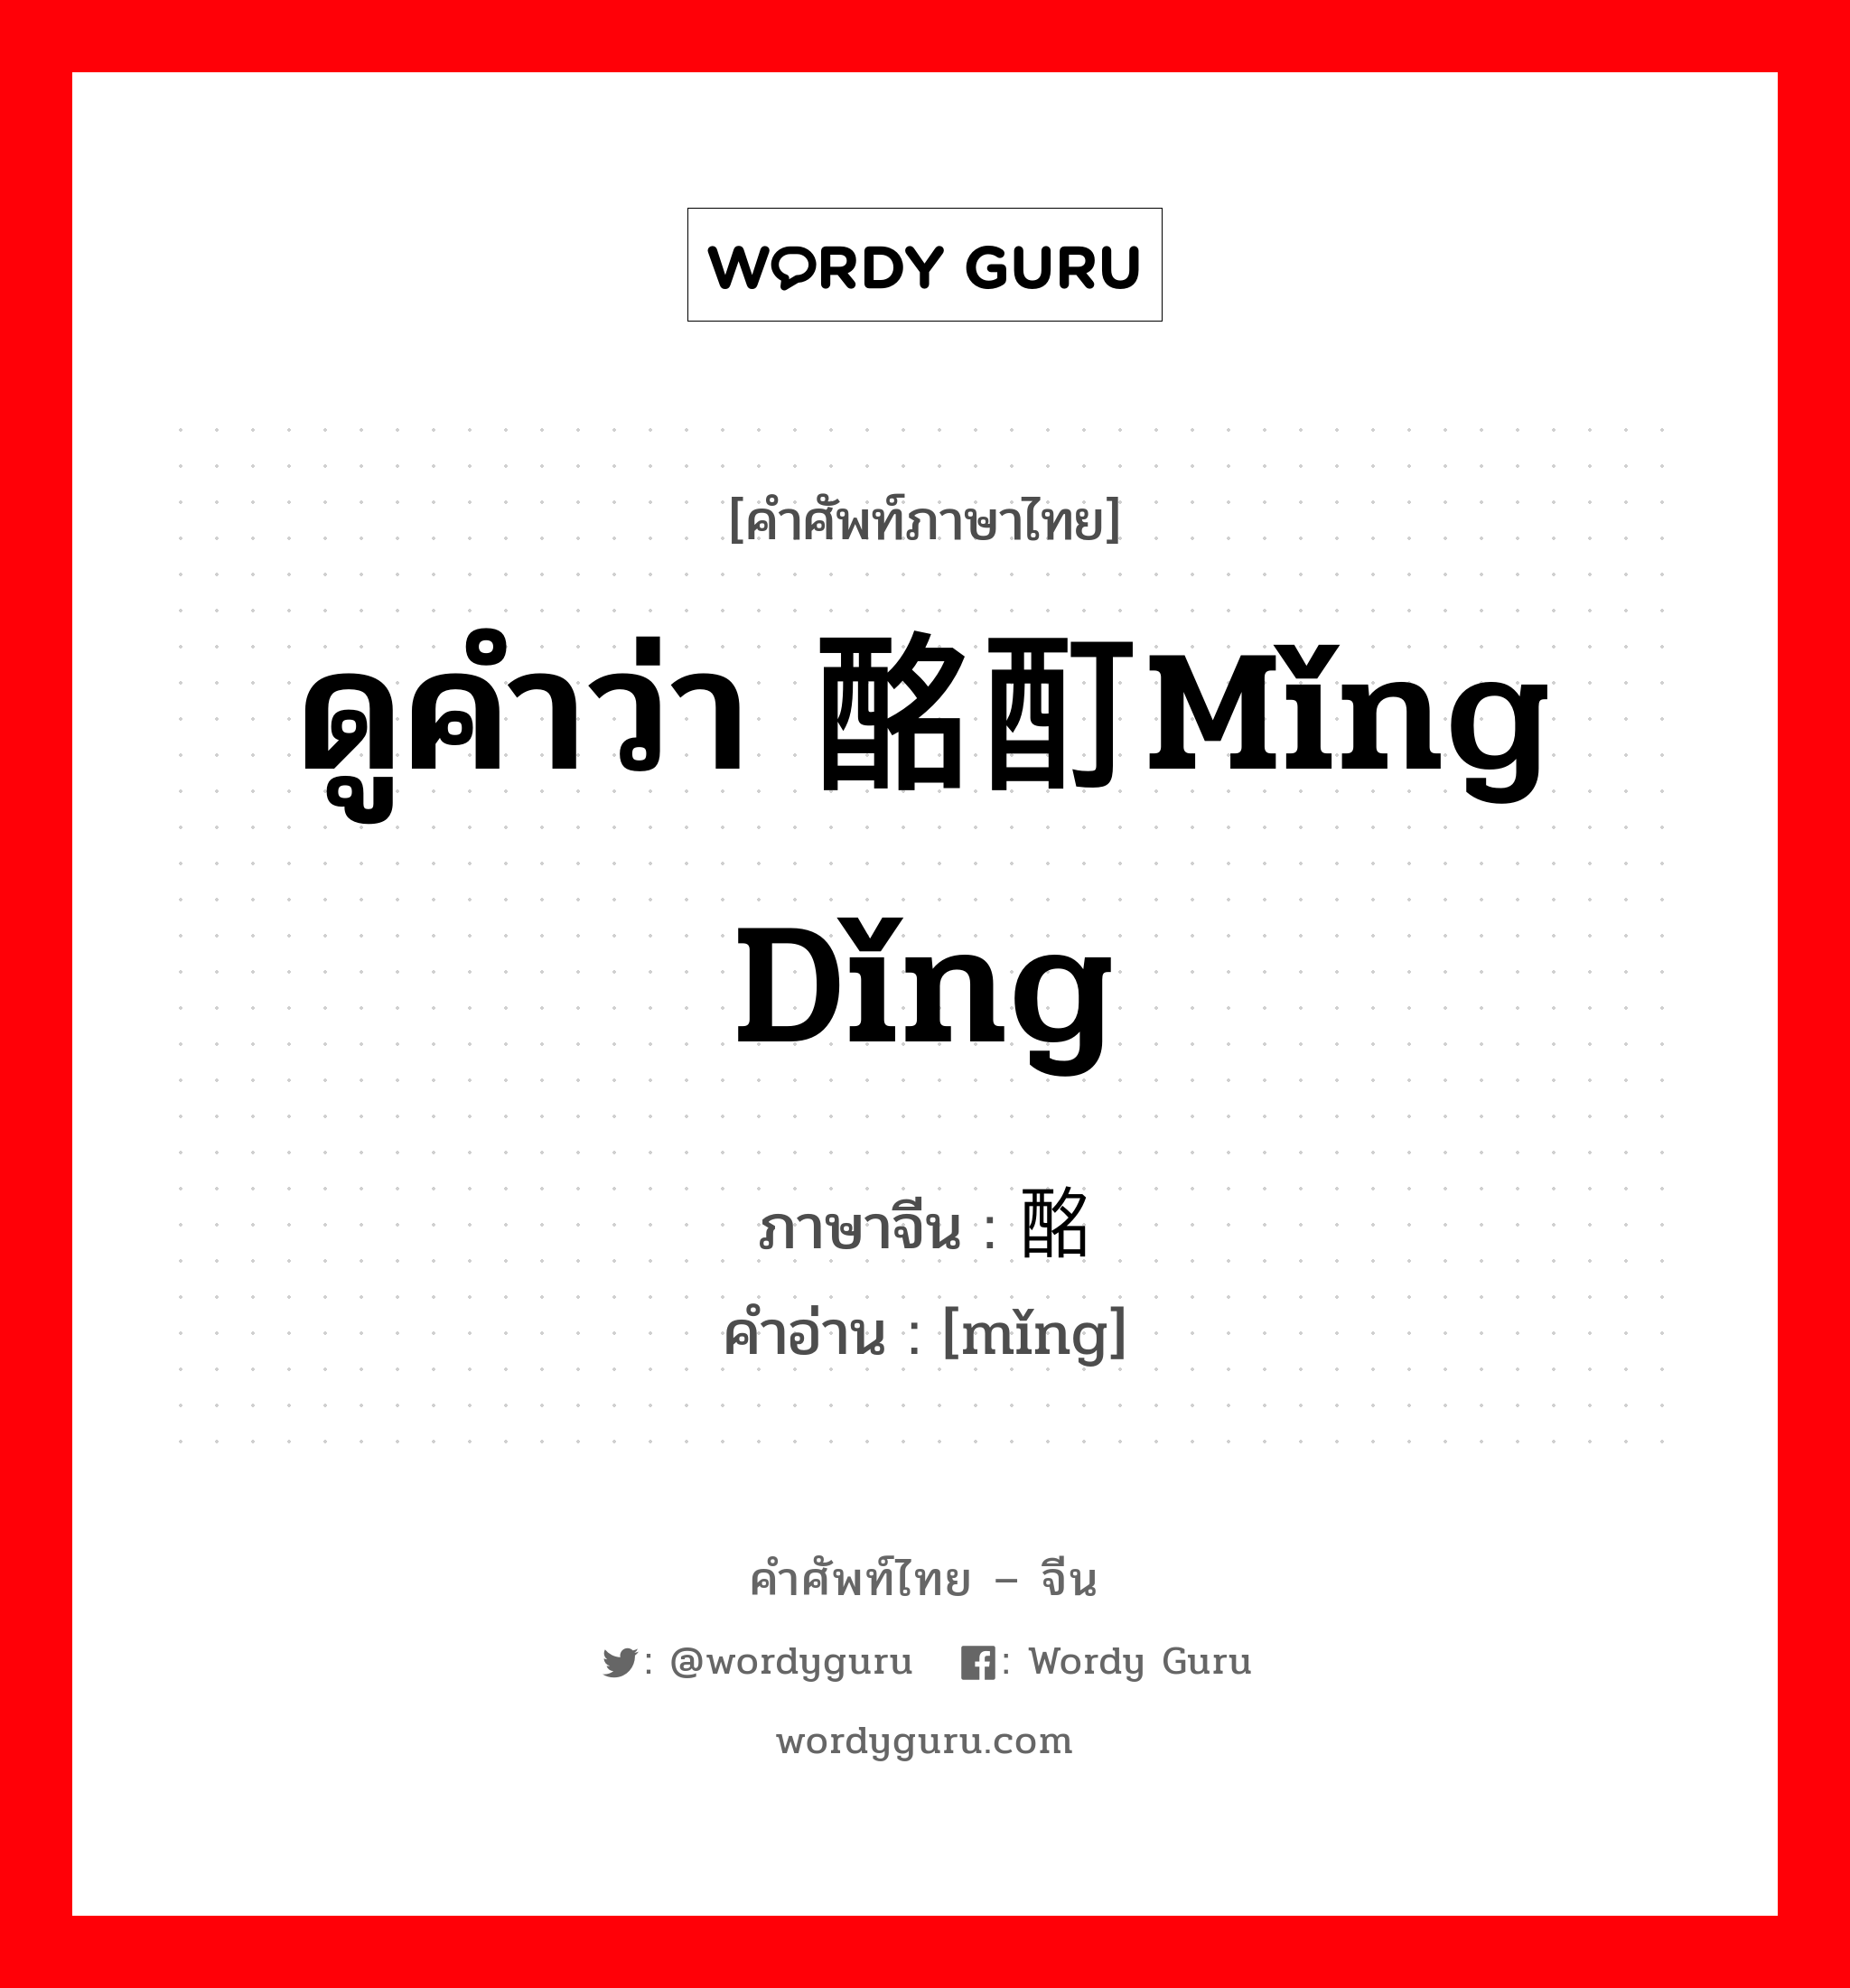 ดูคำว่า 酩酊mǐng dǐng ภาษาจีนคืออะไร, คำศัพท์ภาษาไทย - จีน ดูคำว่า 酩酊mǐng dǐng ภาษาจีน 酩 คำอ่าน [mǐng]